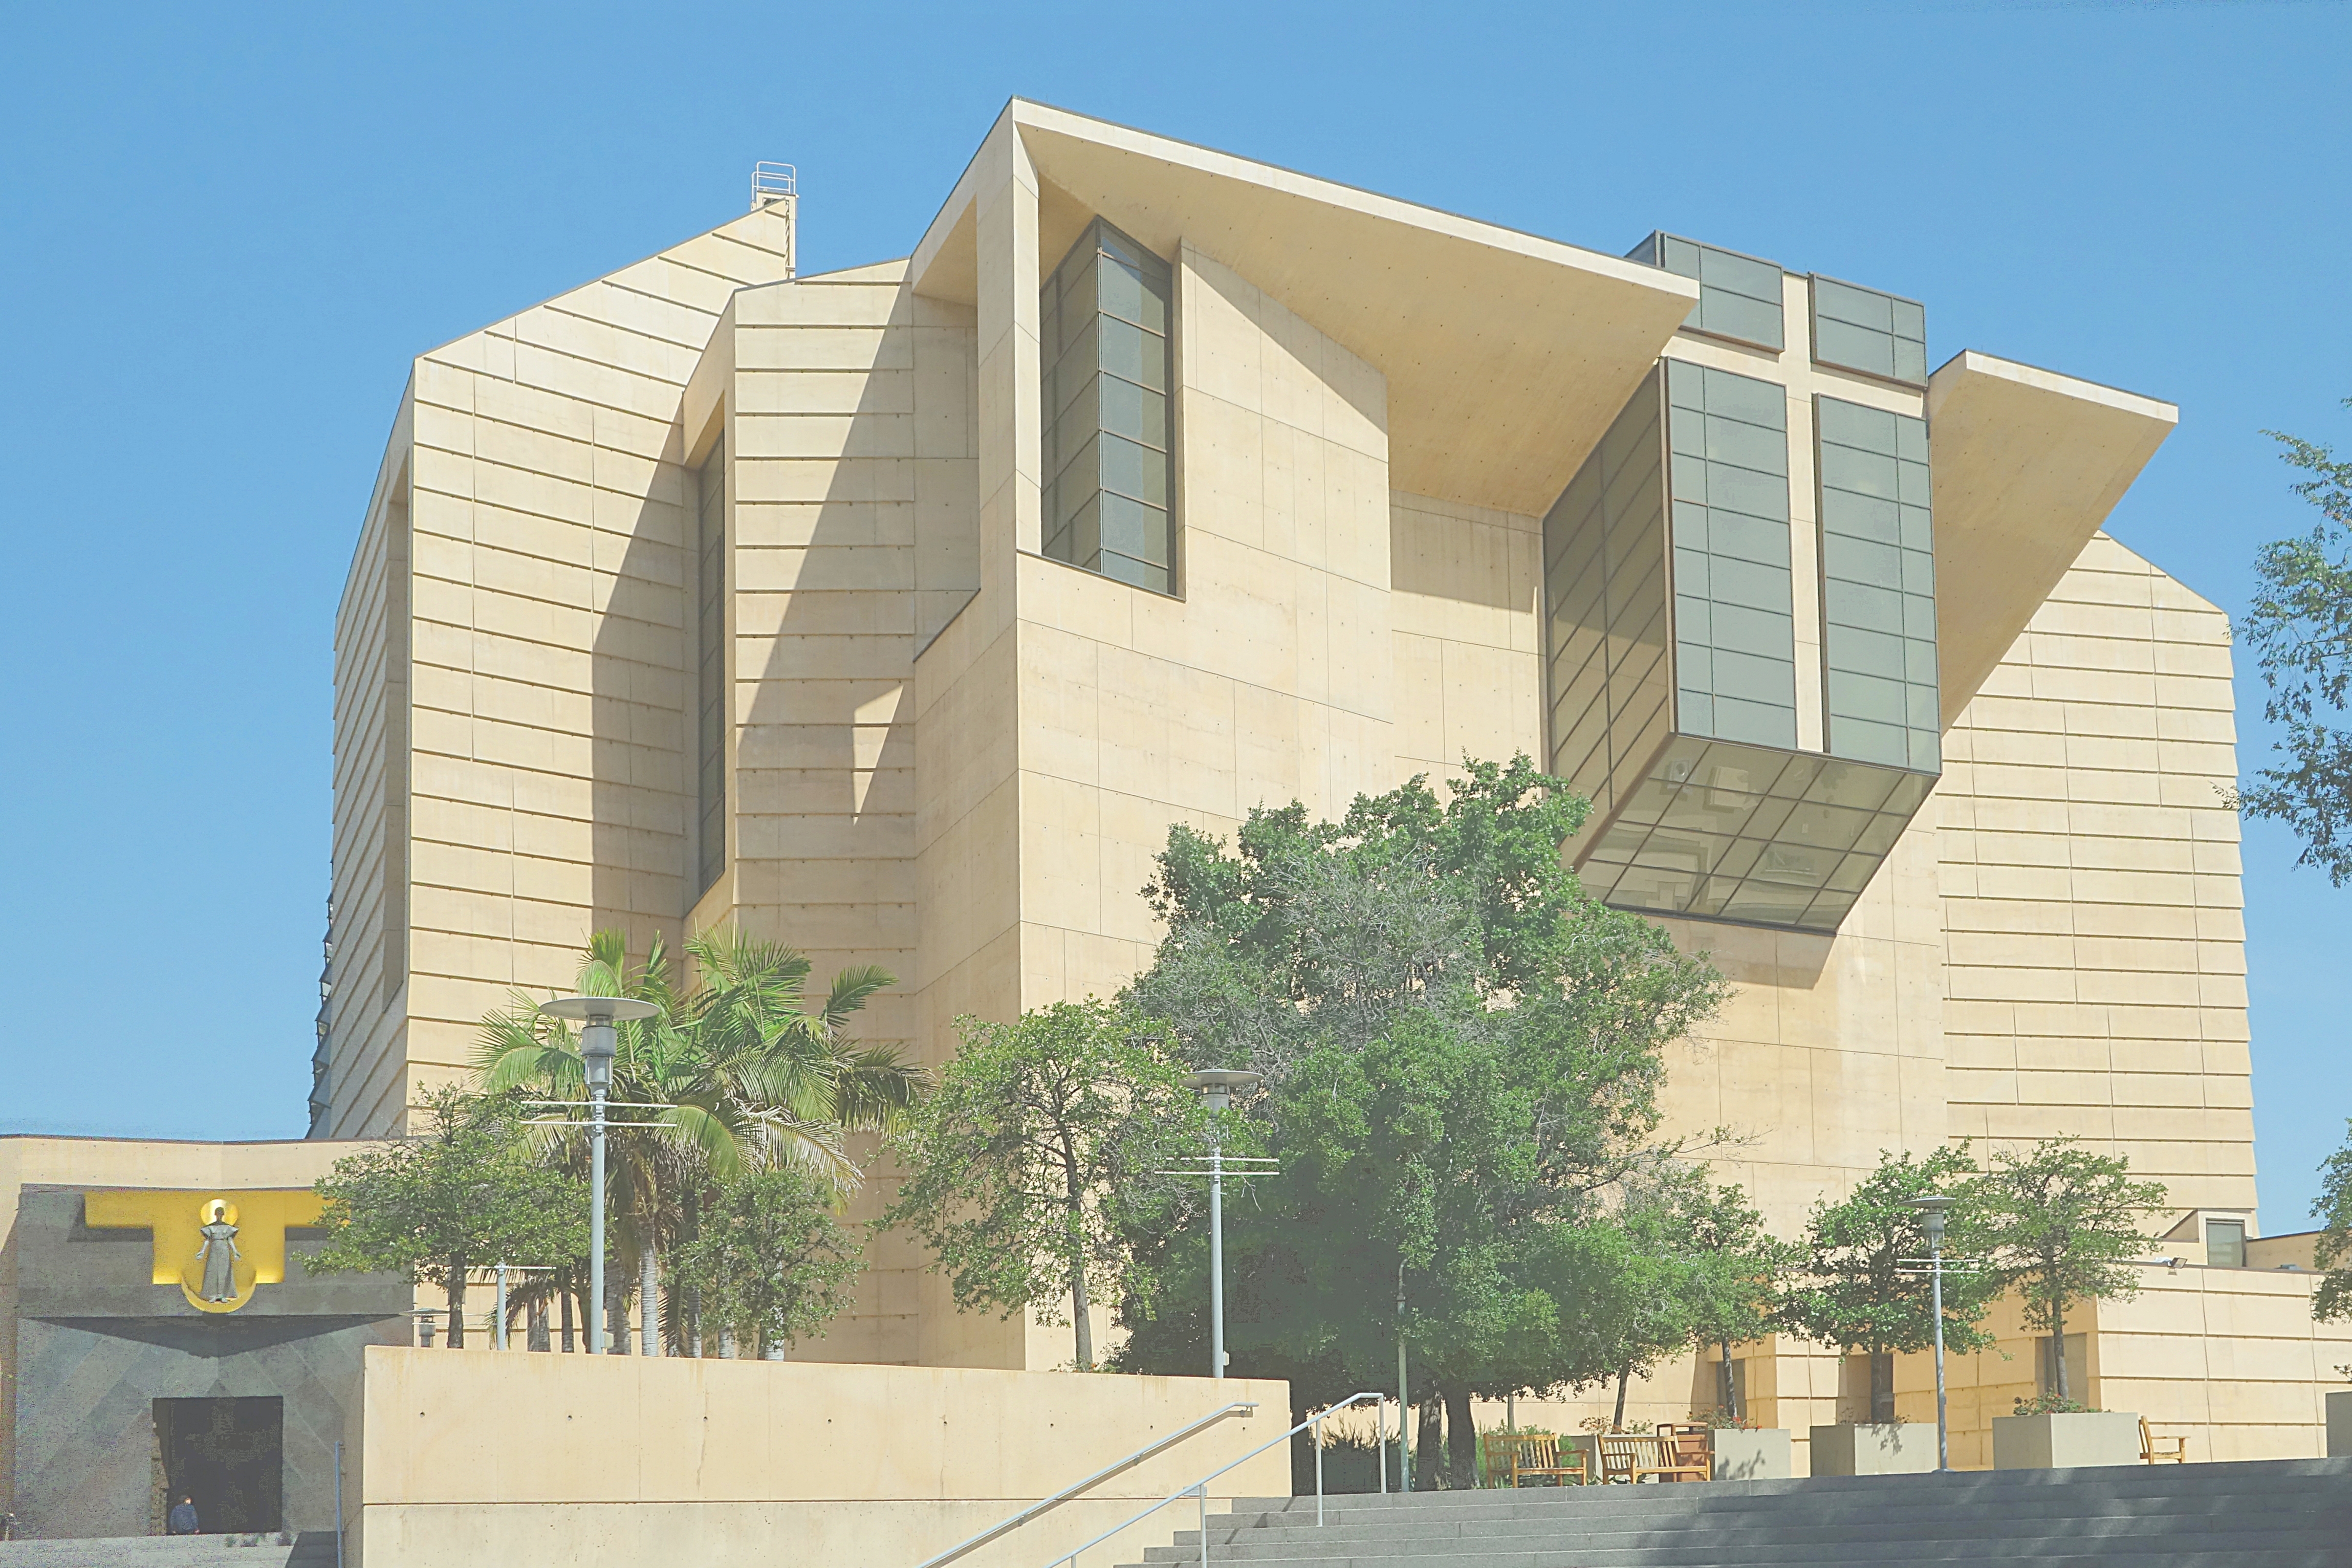 Католическая церковь в стиле модерн в Лос-Анжелесе. Фото Морошкина В.В.